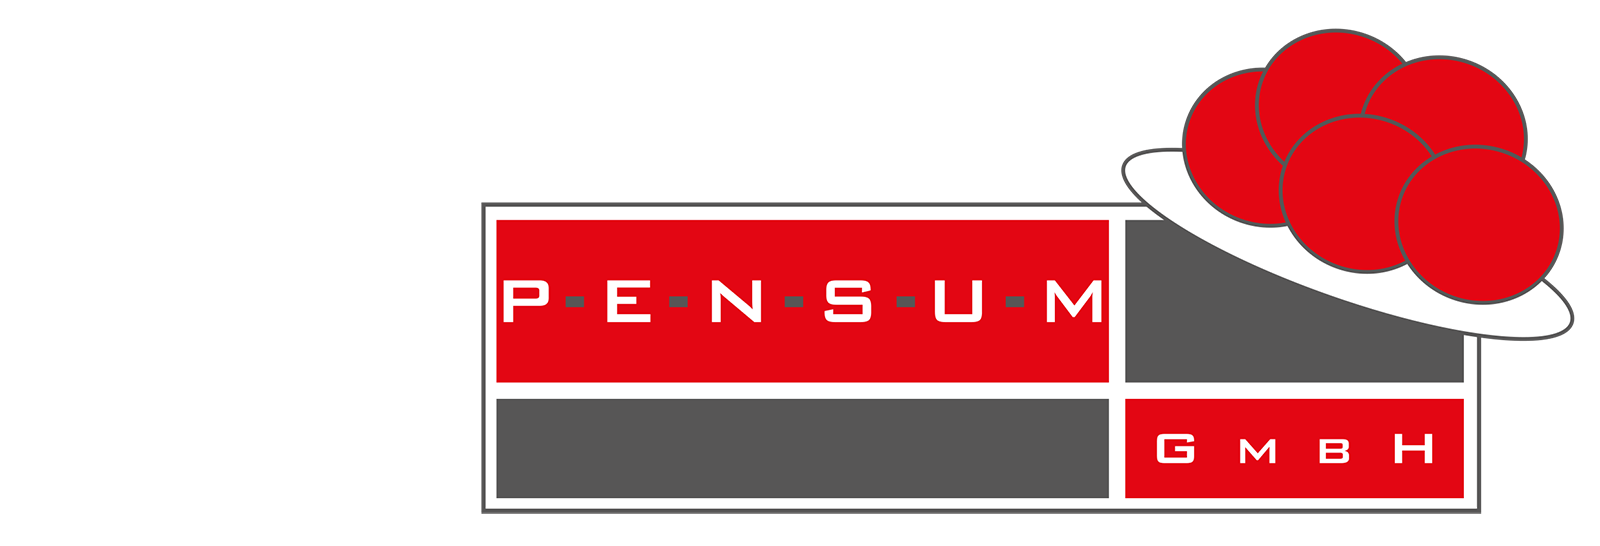 Pensum_Logo2